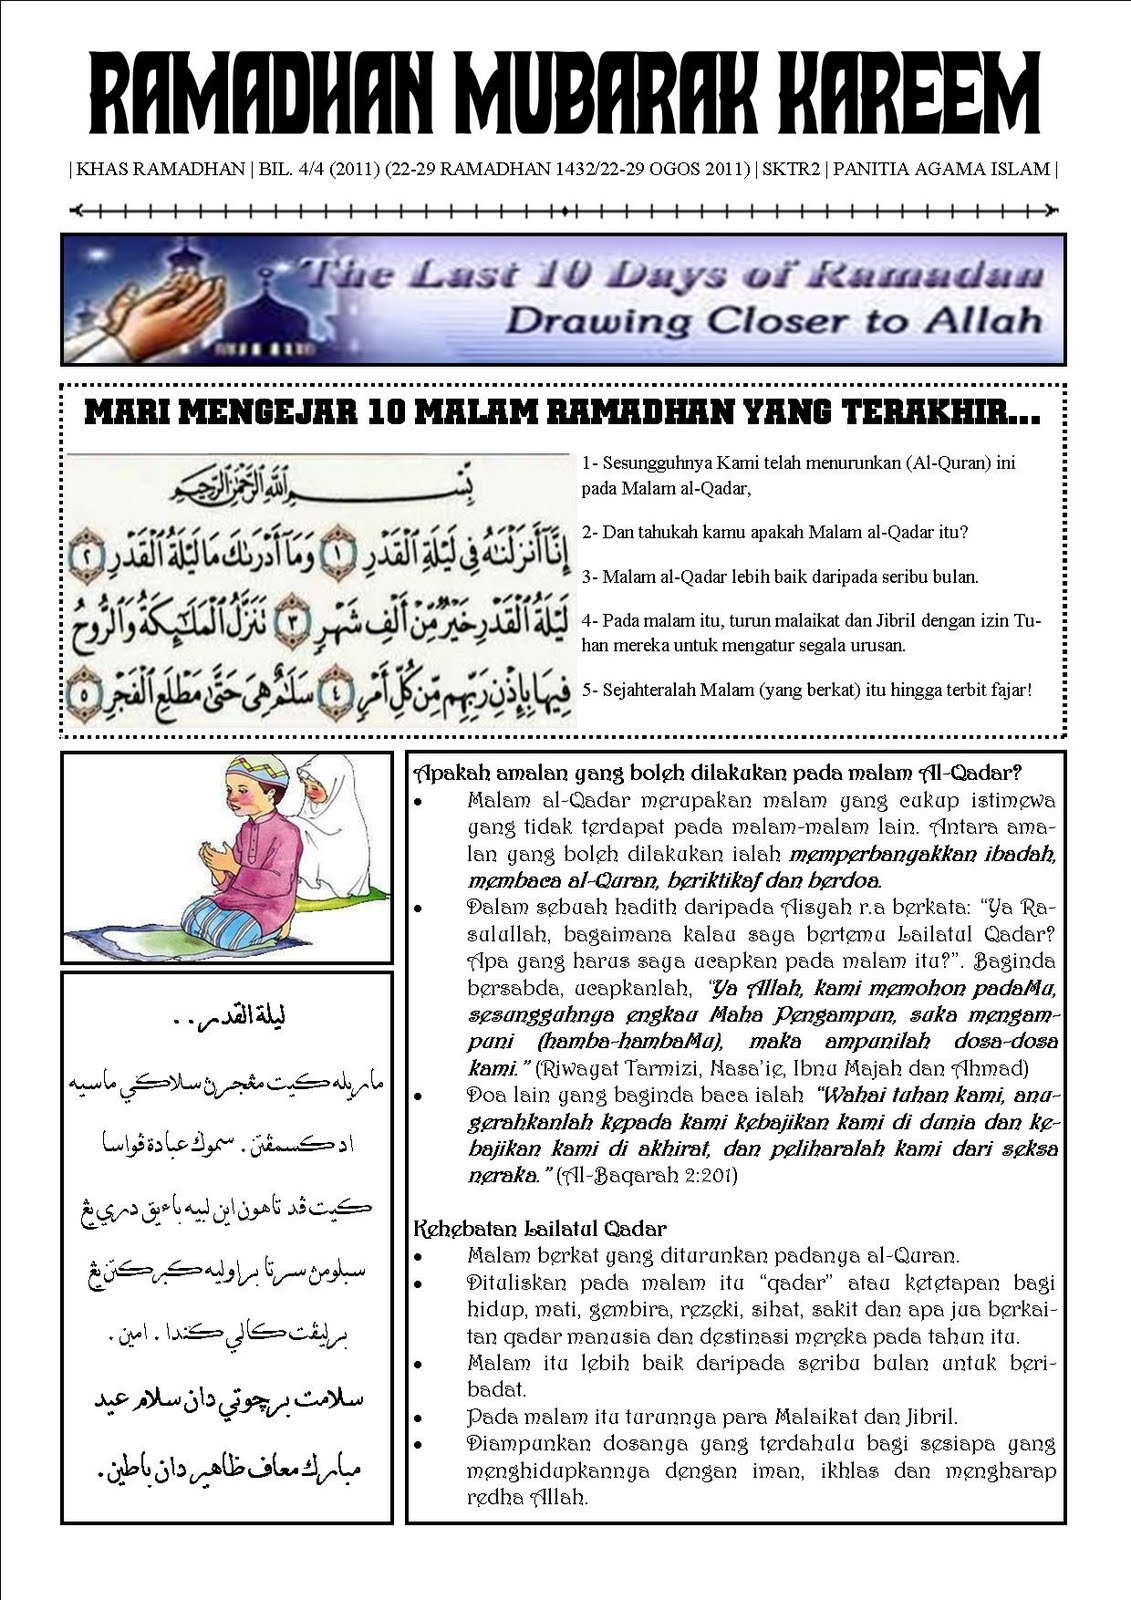 CYBA SPACE: Buletin Ramadhan